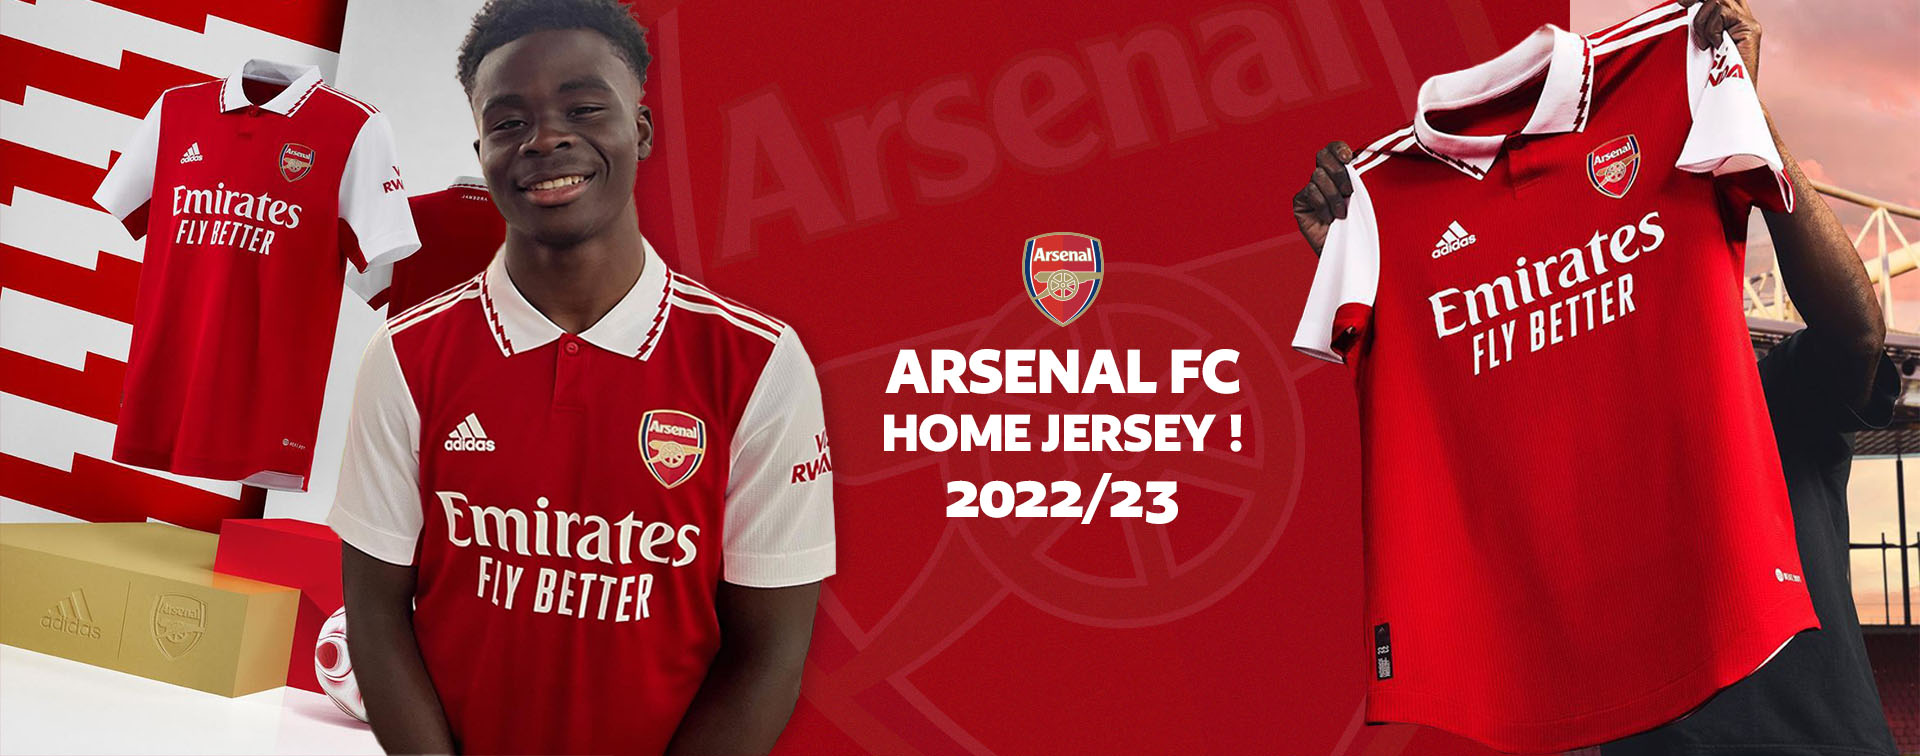 Arsenal 2022/23